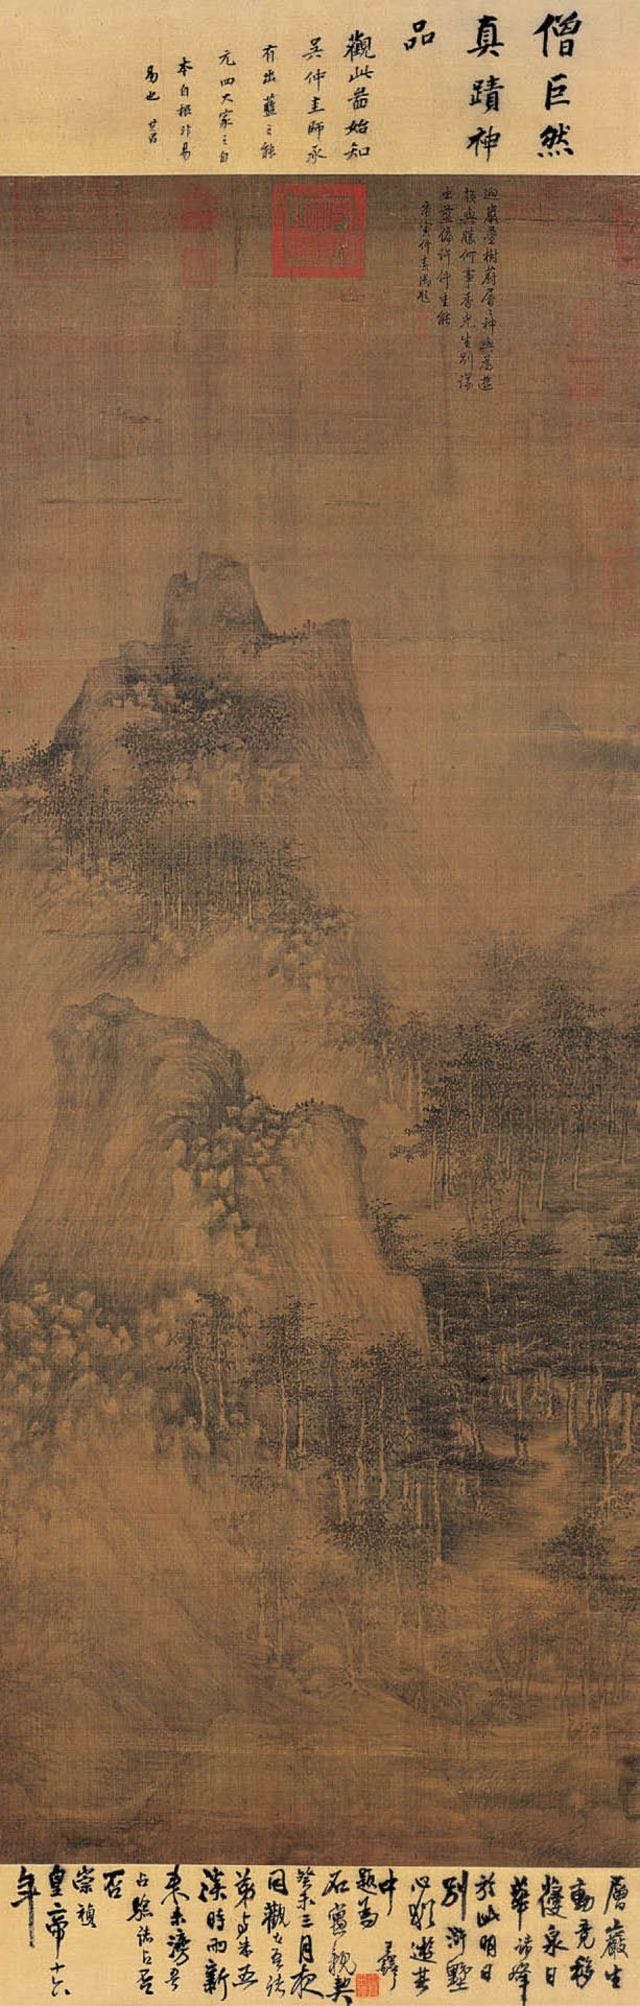 五代,北宋的山水画,在中国艺术史乃至文化史上耸立起了一座不可逾越的